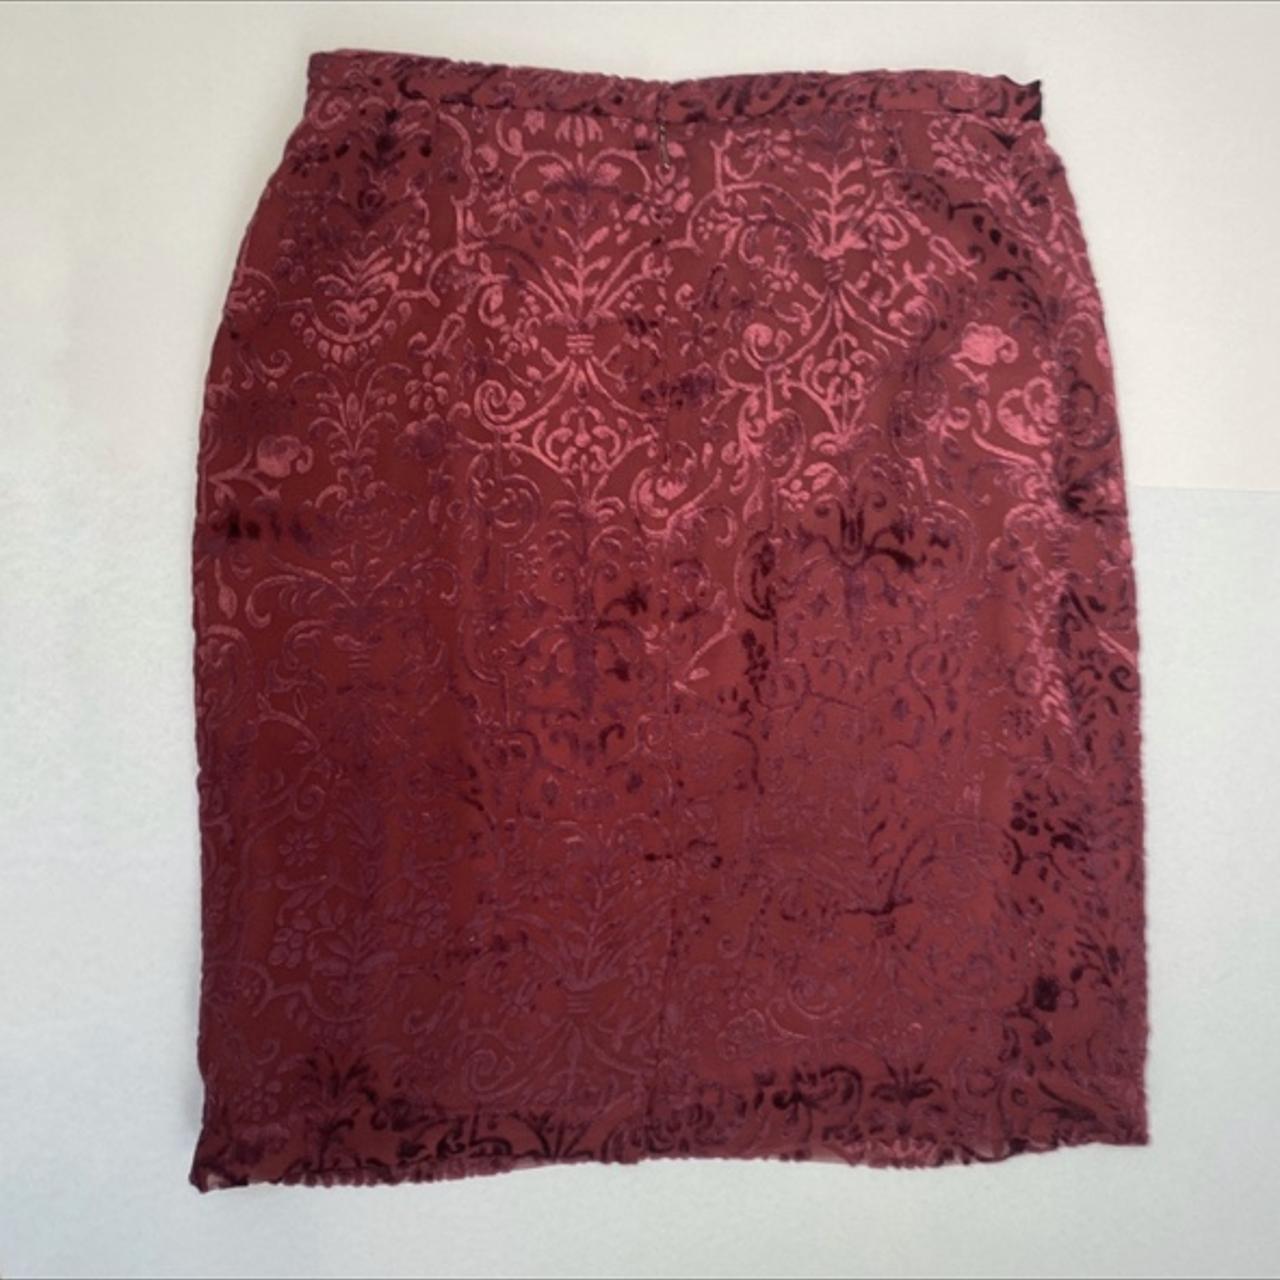 Burgundy velvet burnout skirt by the brand August... - Depop